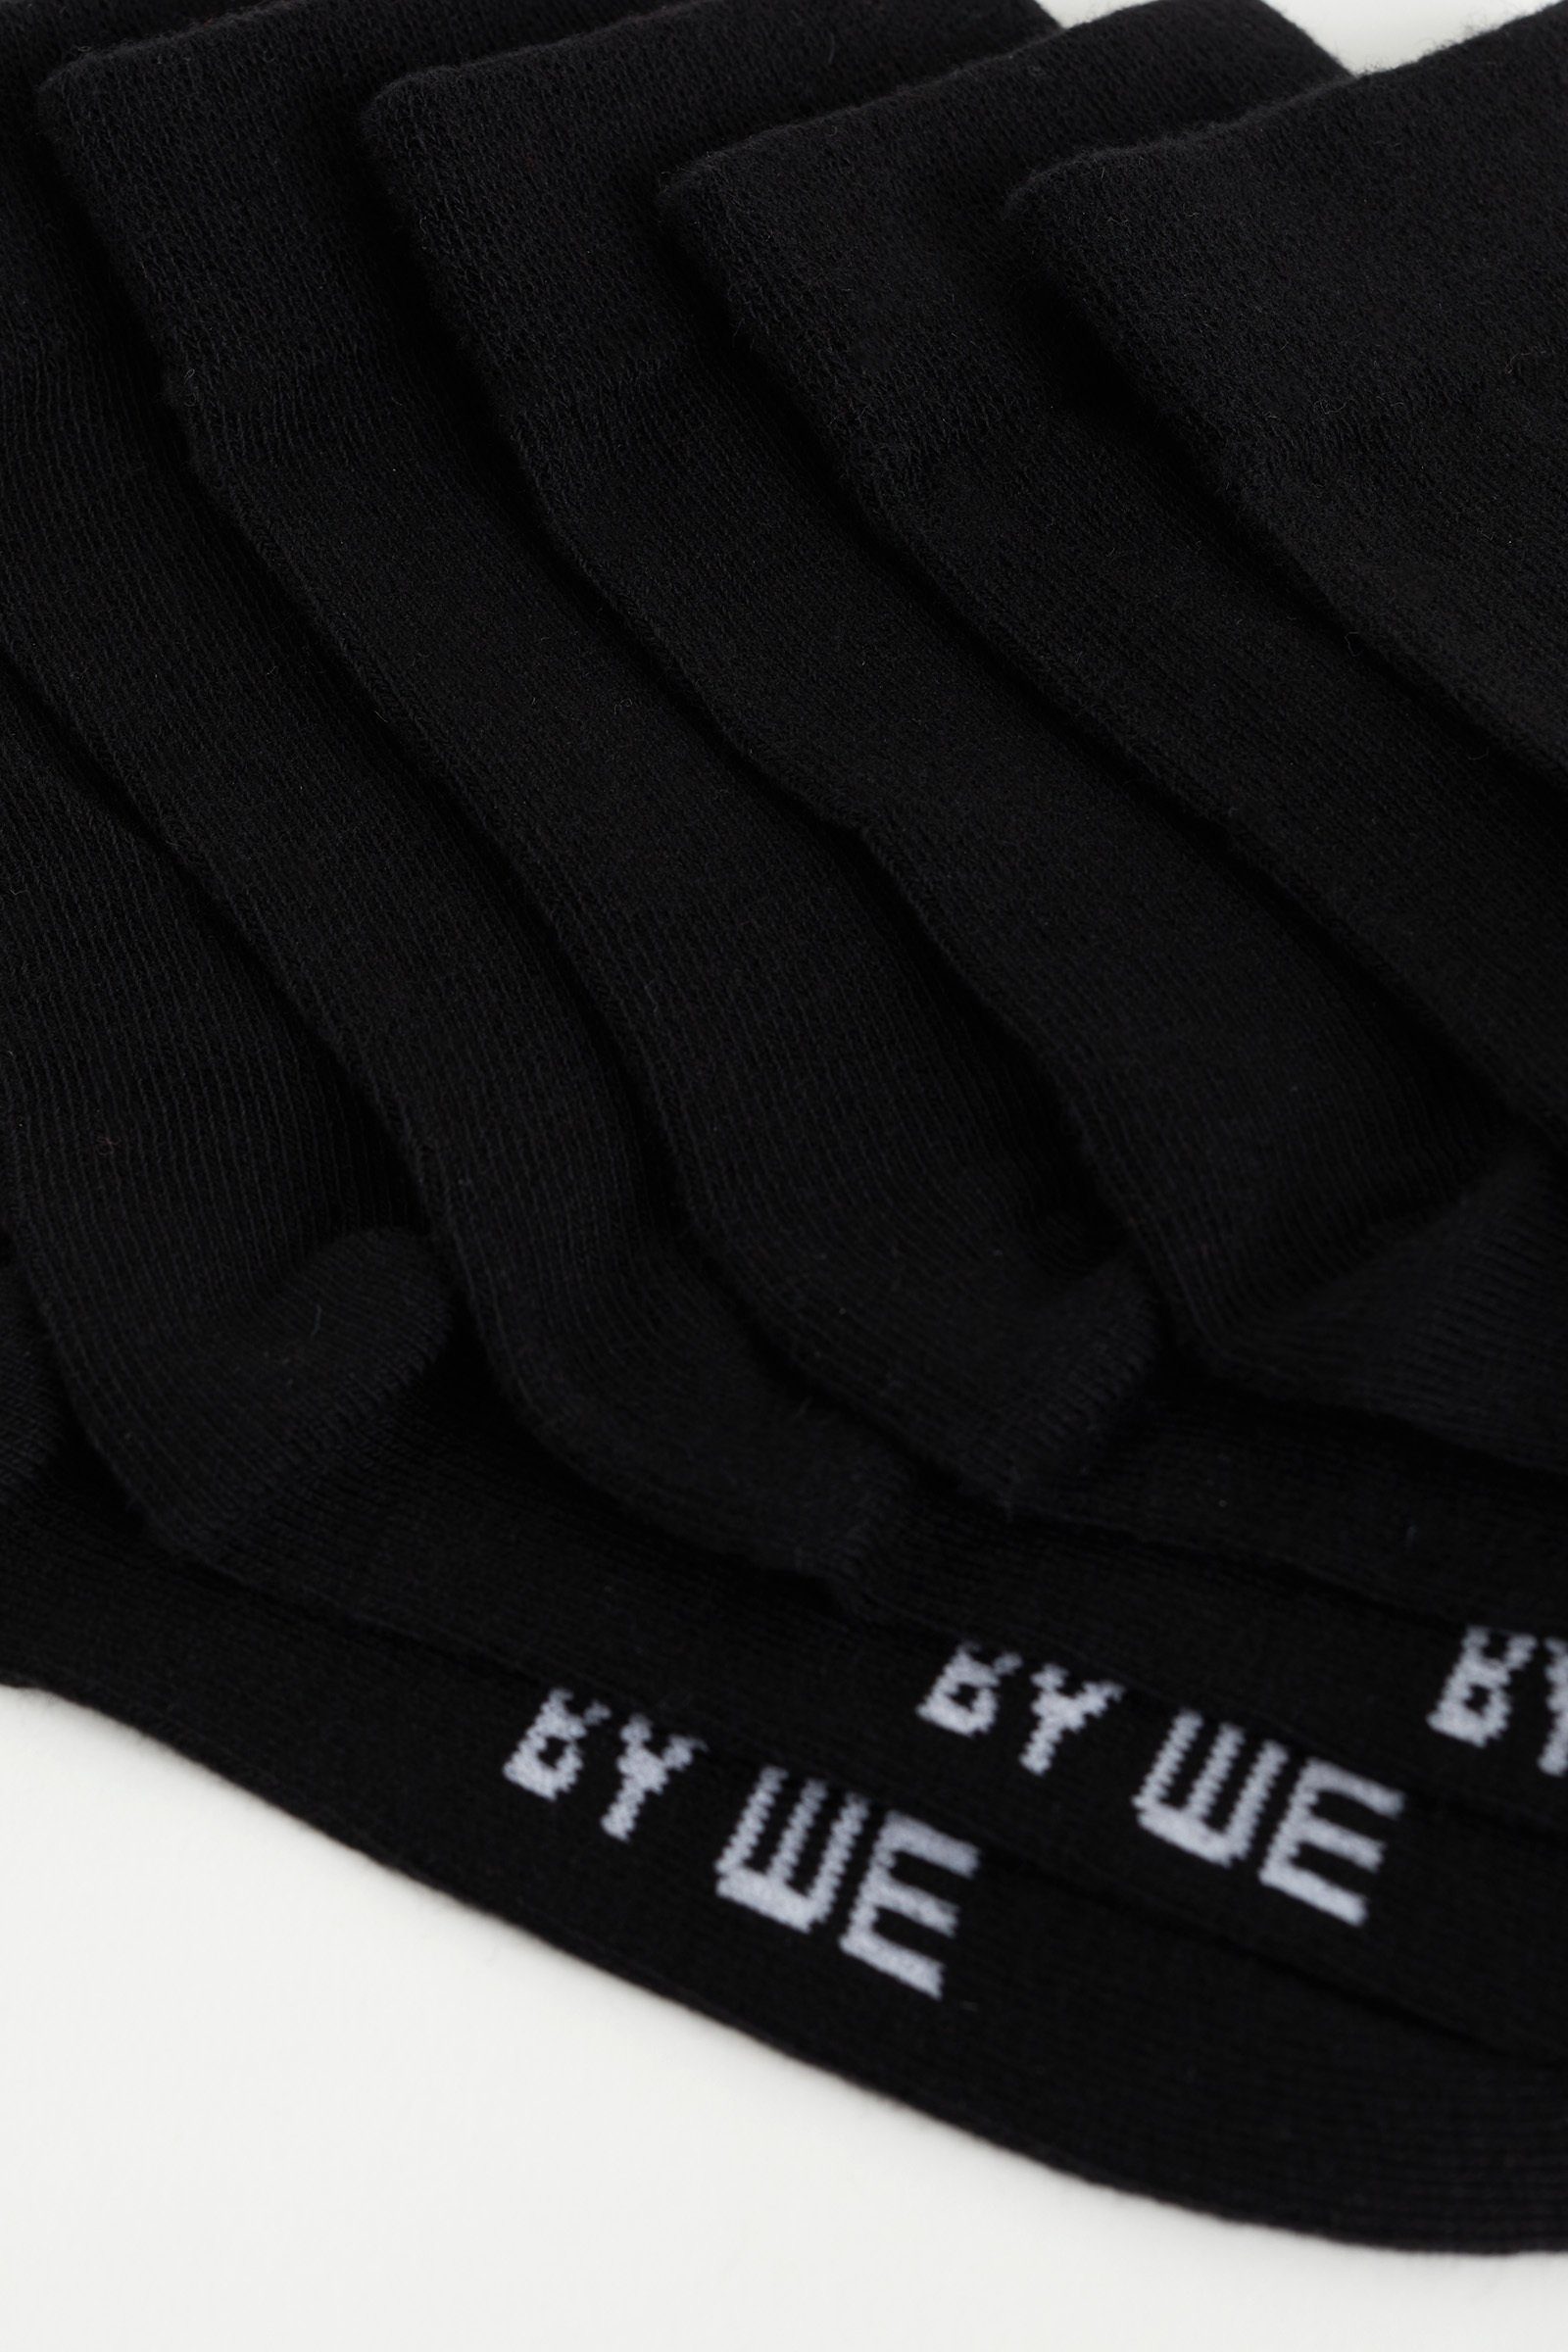 Fashion Schwarz Socken WE (7-Paar)